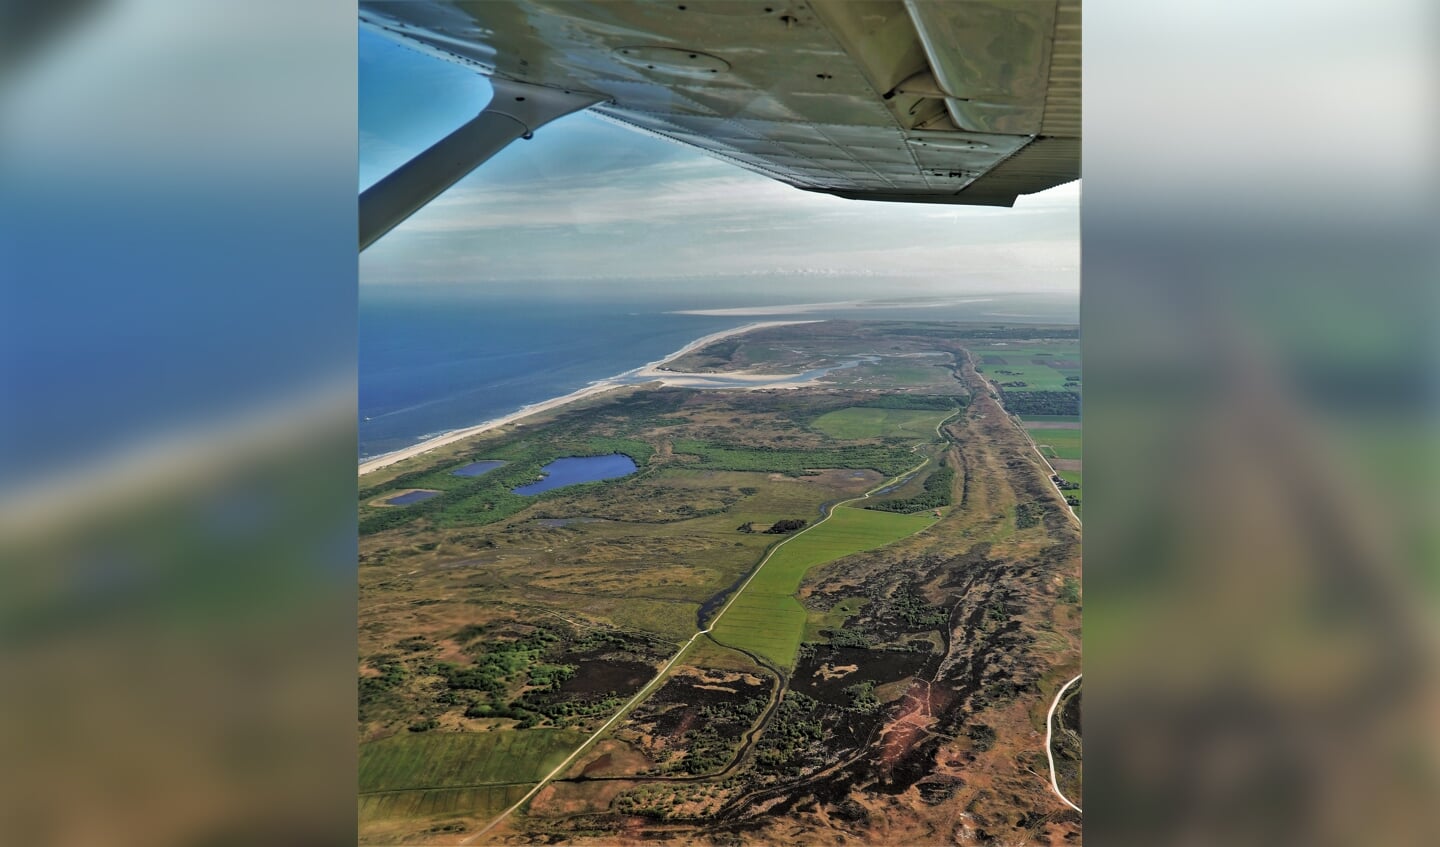 Geweldige ervaring om met een rondvlucht  boven Texel mee te kunnen vliegen. Met dank aan de piloot!